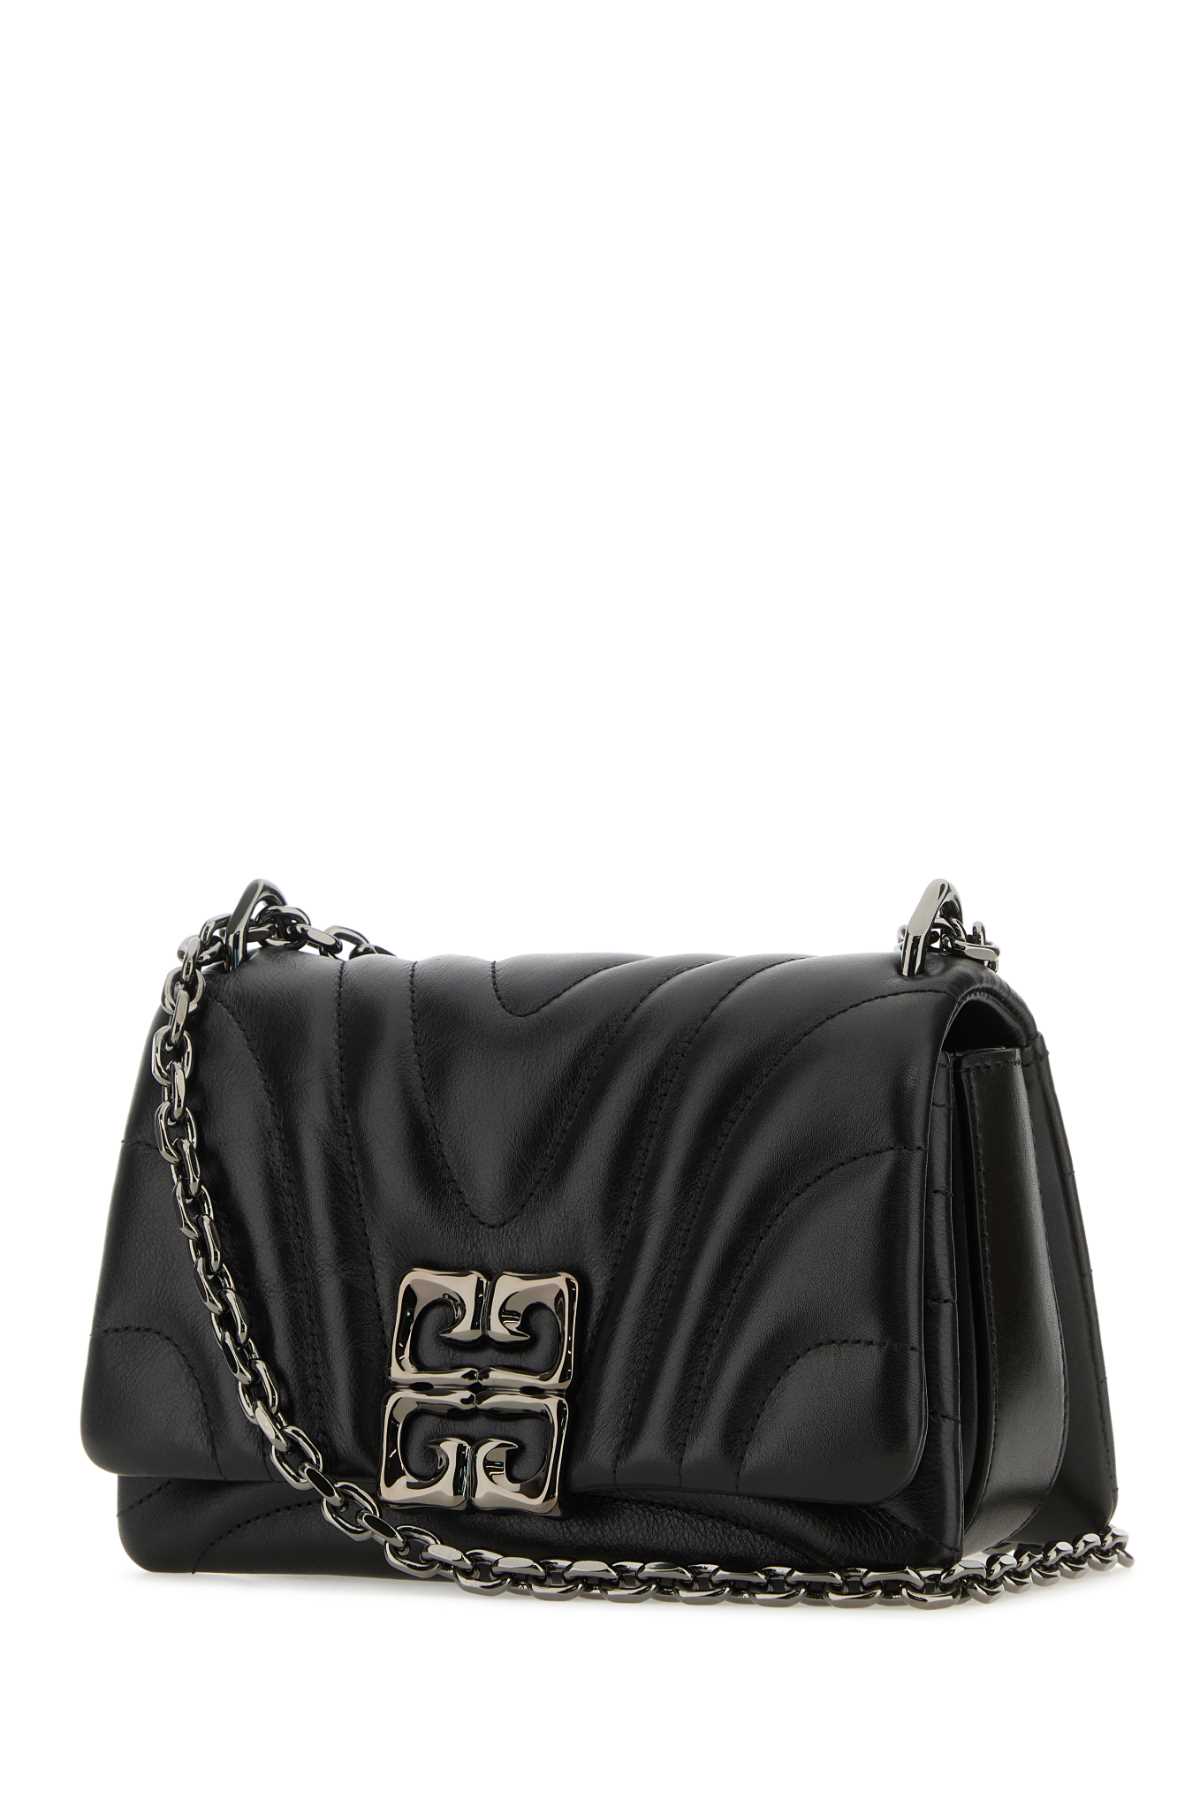 Shop Givenchy Black Leather Small 4g Soft Shoulder Bag